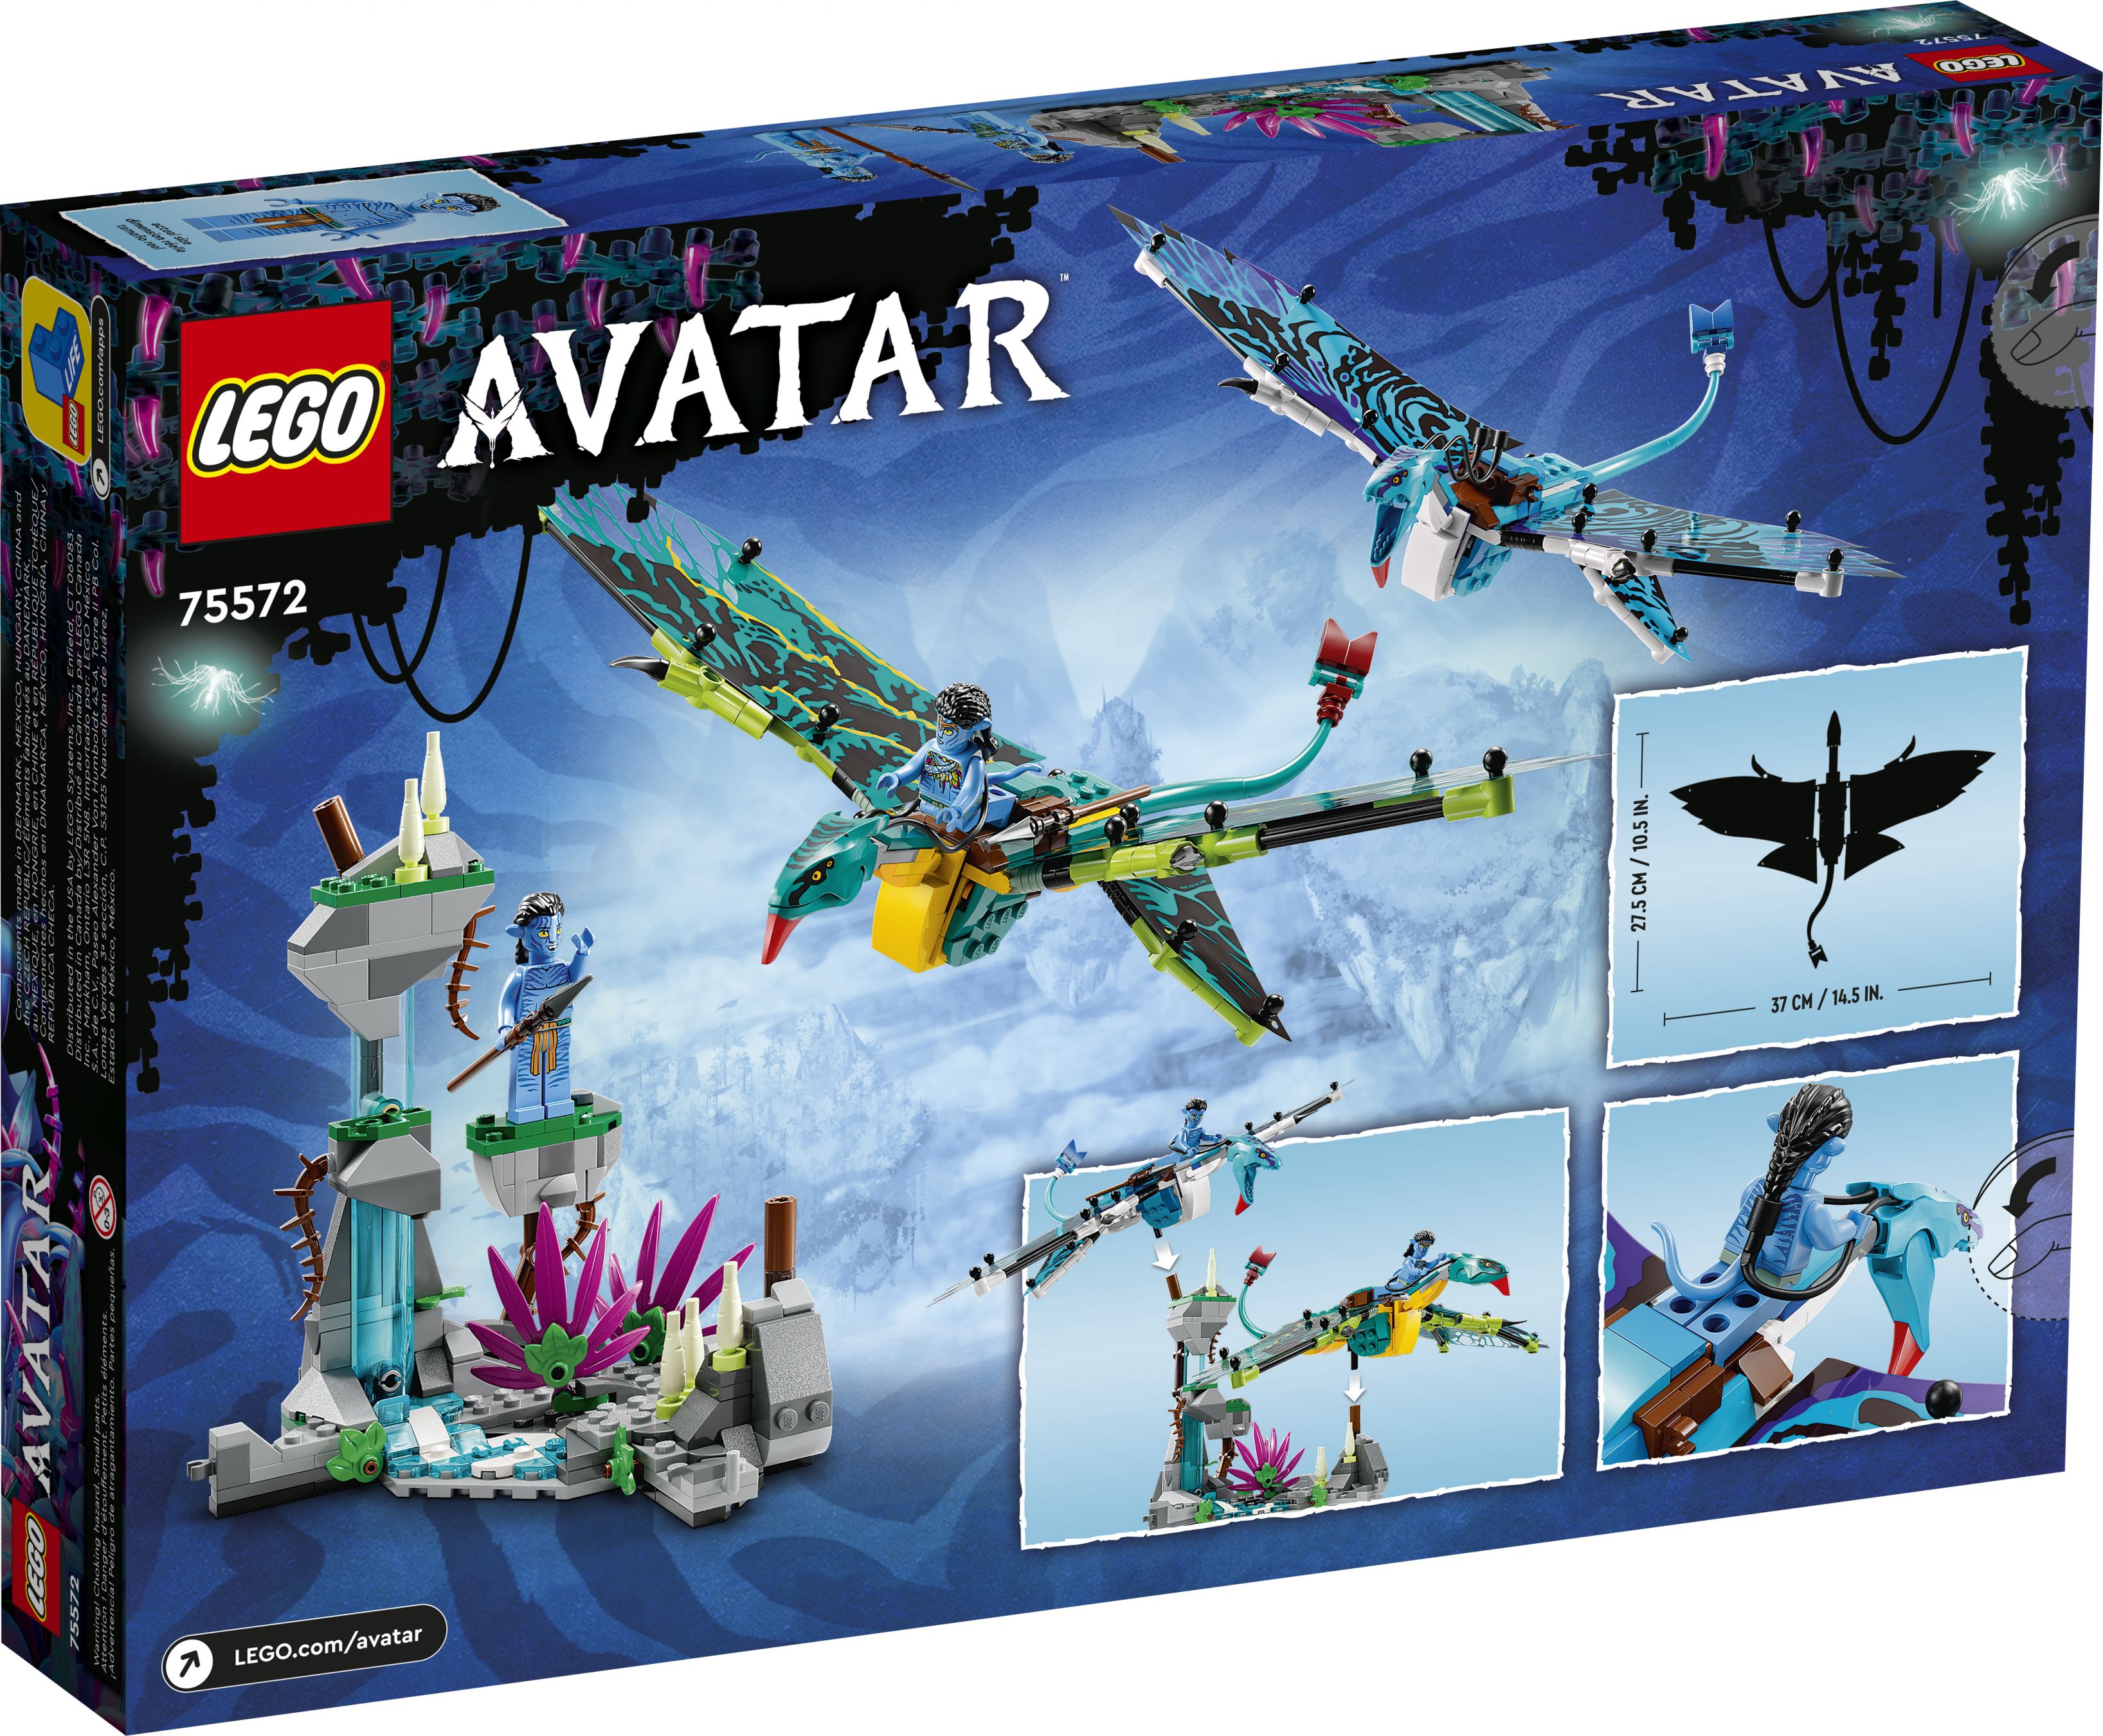 LEGO Avatar 75572 Jakes und Neytiris erster Flug auf einem Banshee LEGO_75572_Box5_V39.jpg